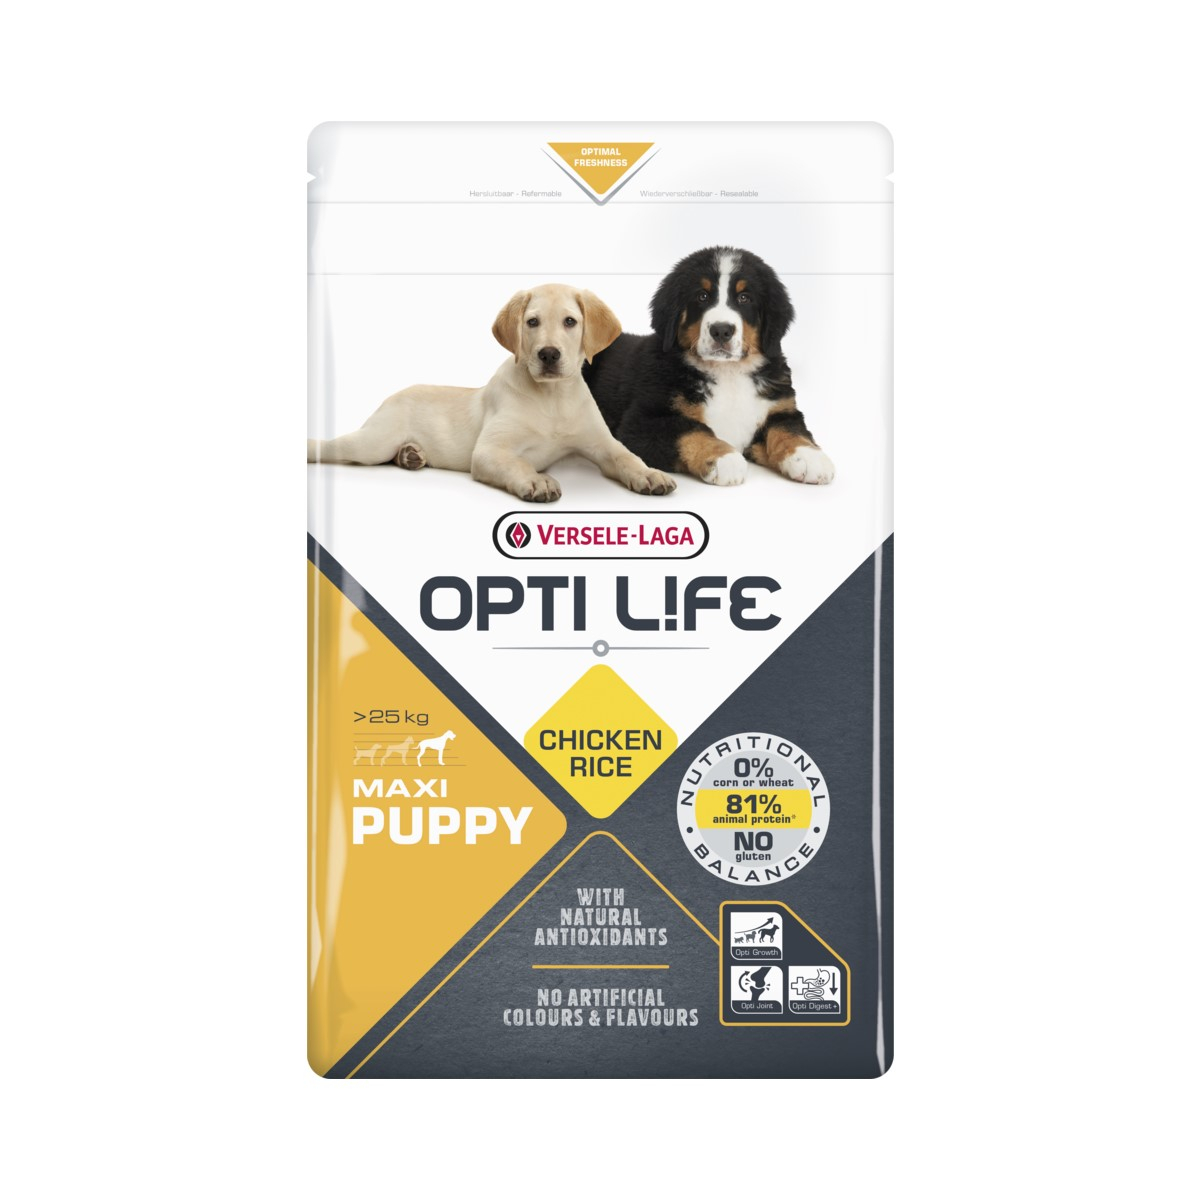 OPTI LIFE Puppy Maxi per cuccioli